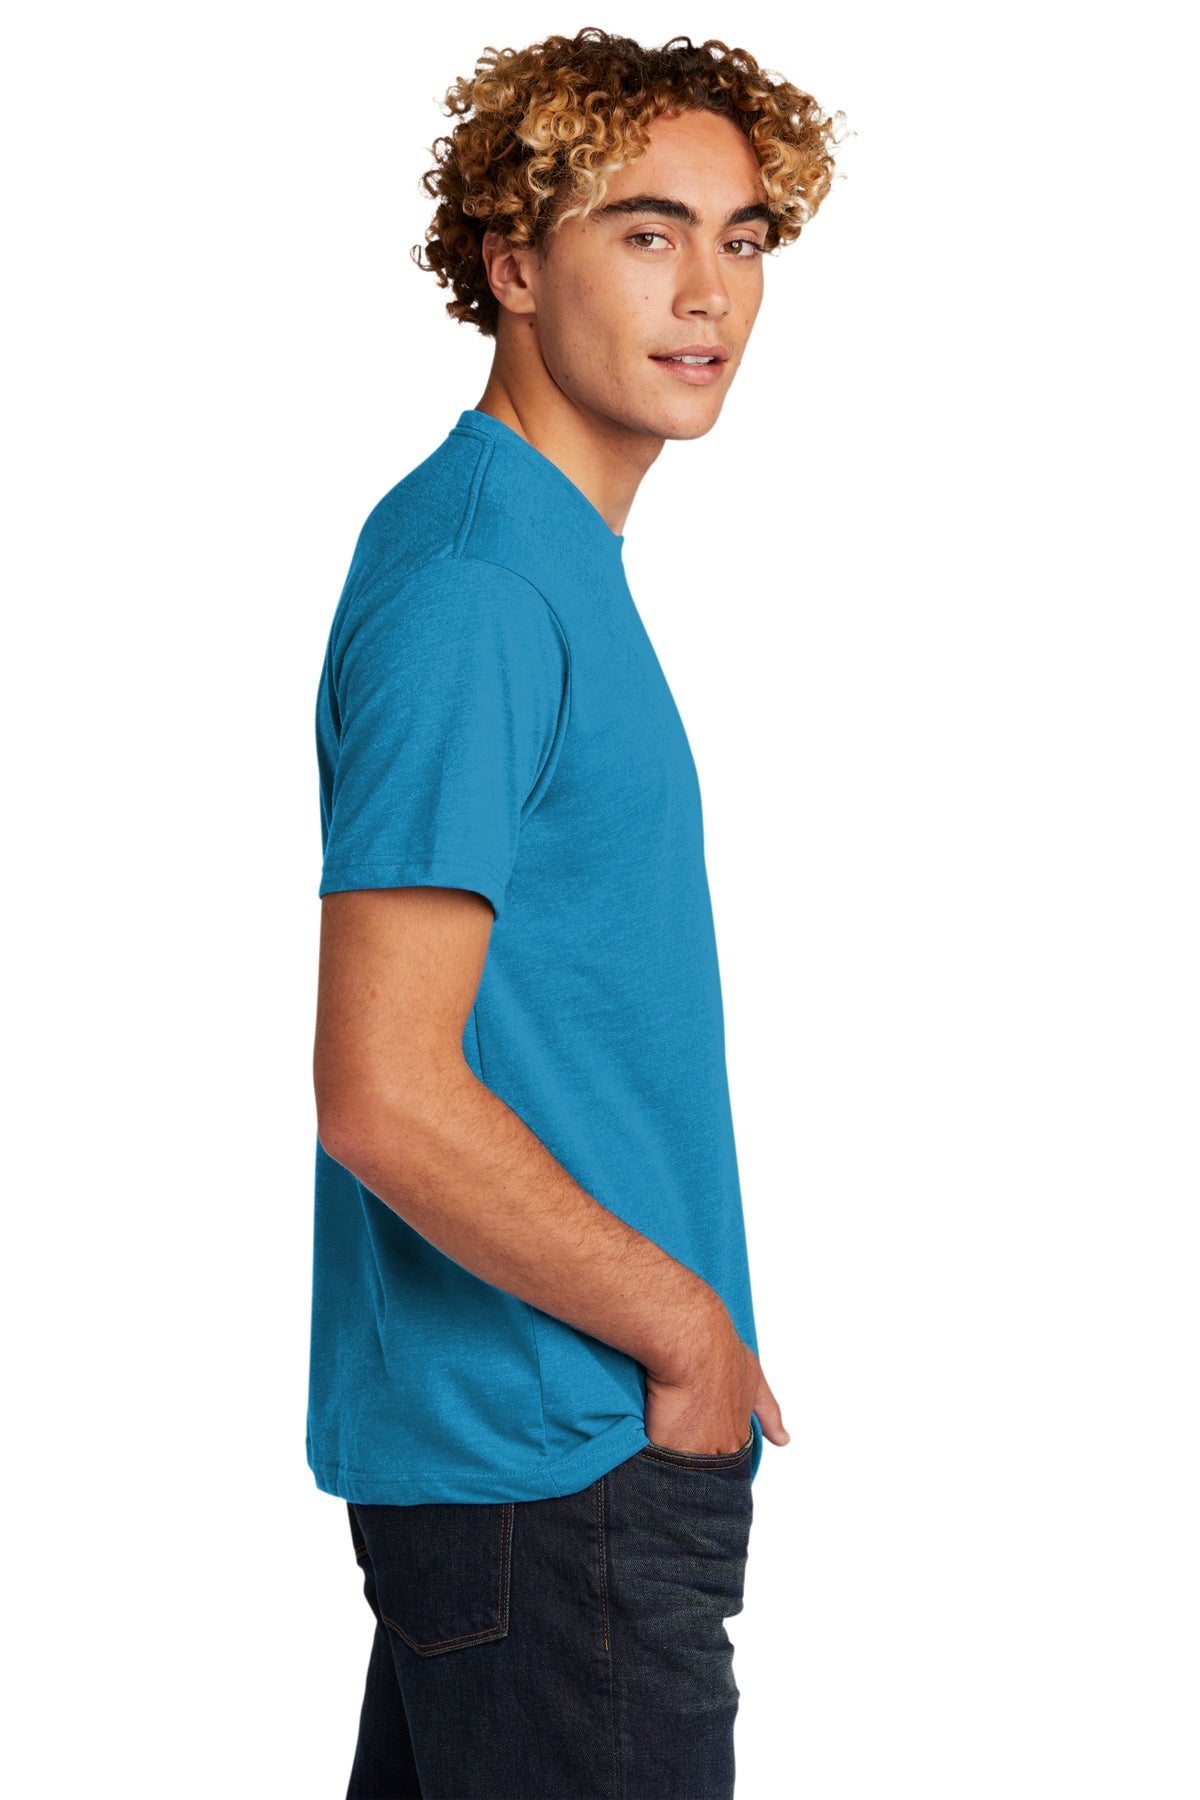 Next Level Unisex CVC Customized T-Shirts, Turquoiseuoise